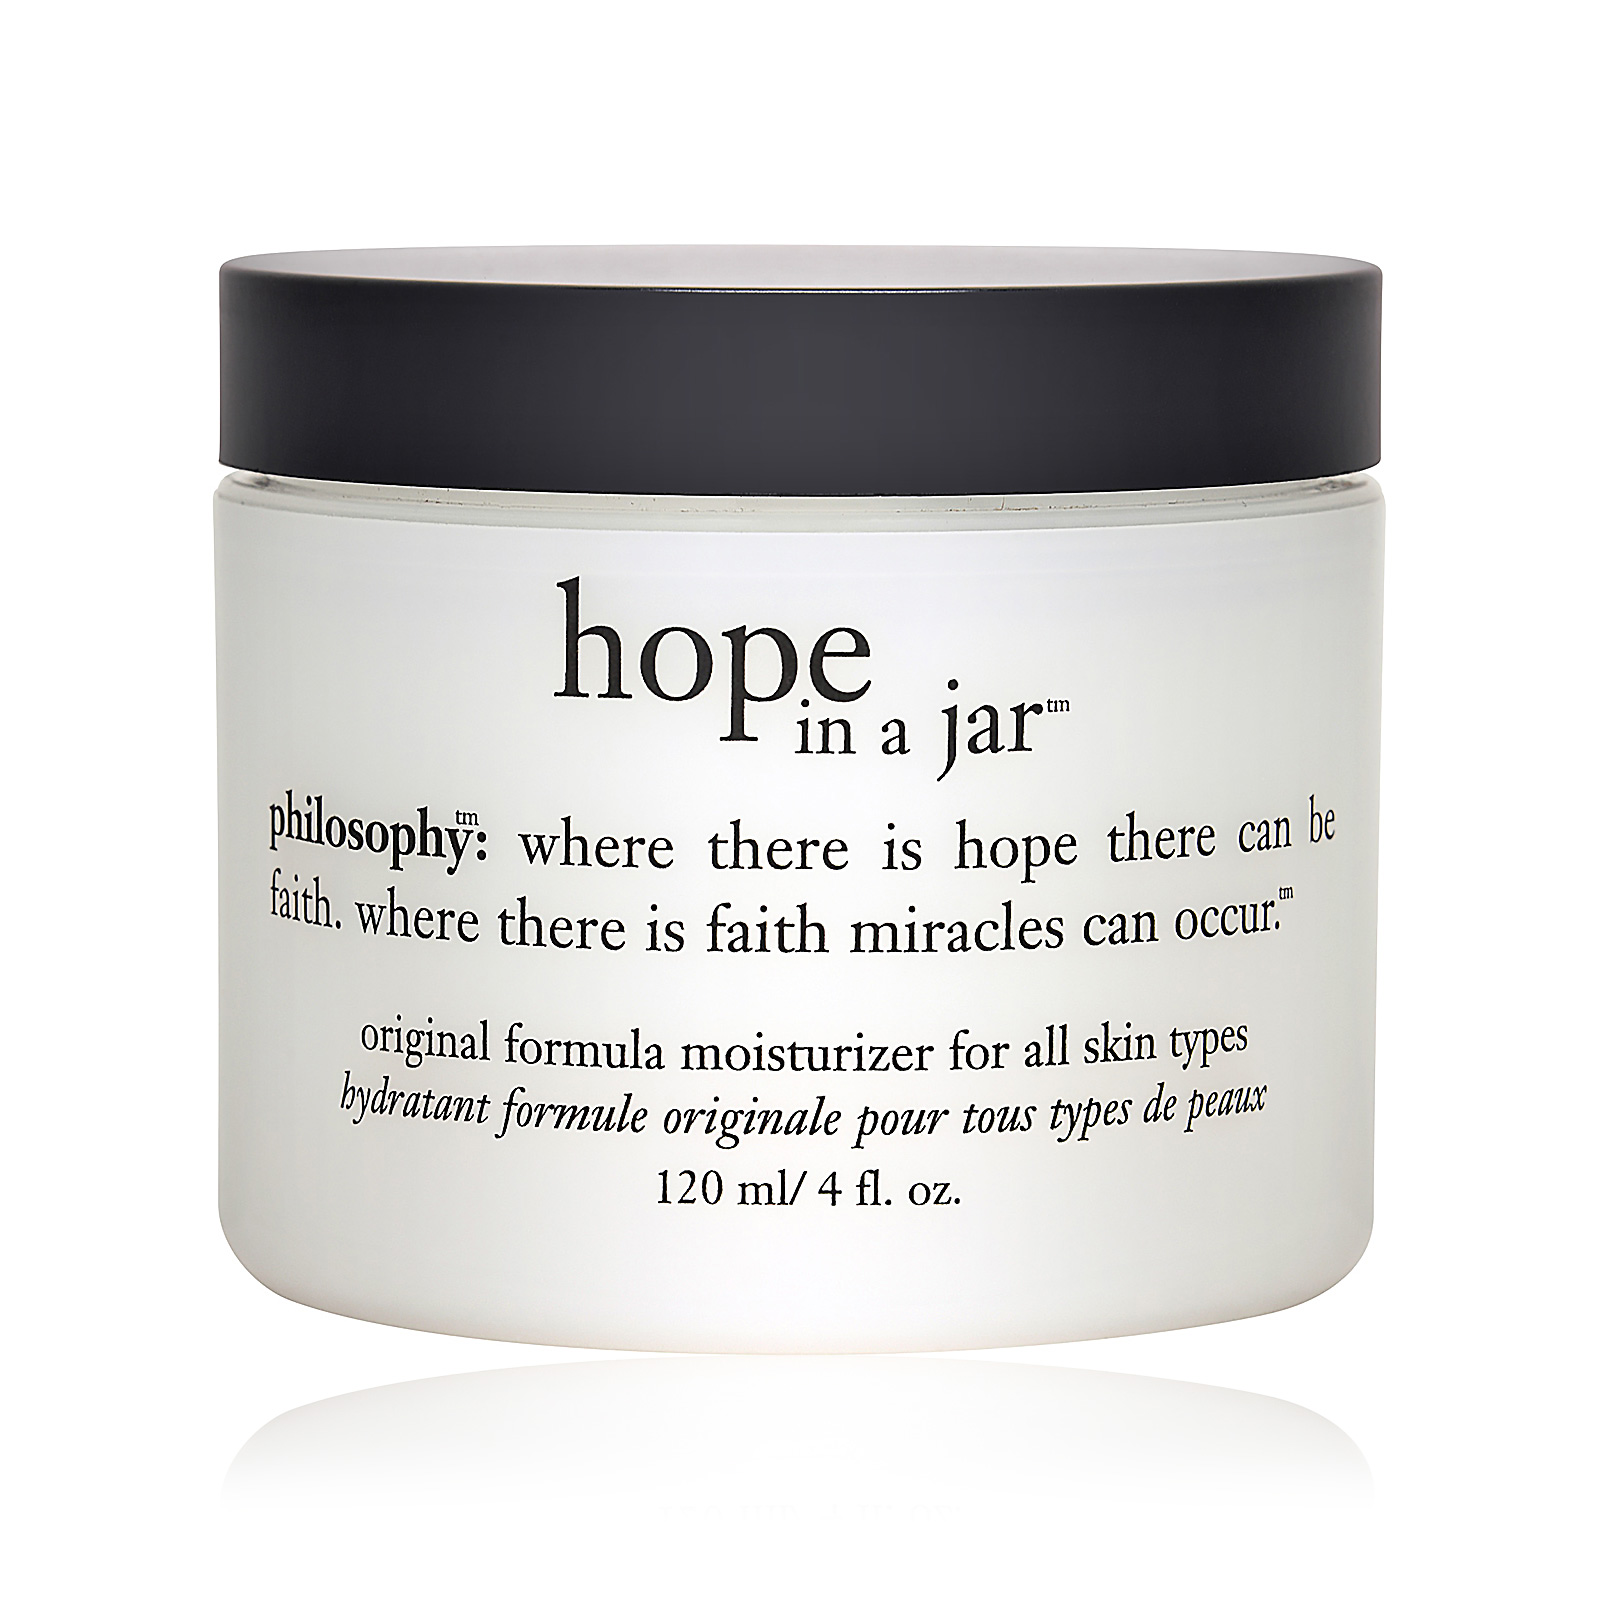 Renewed Hope In A Jar Original Formula Moisturizer For All Skin Types